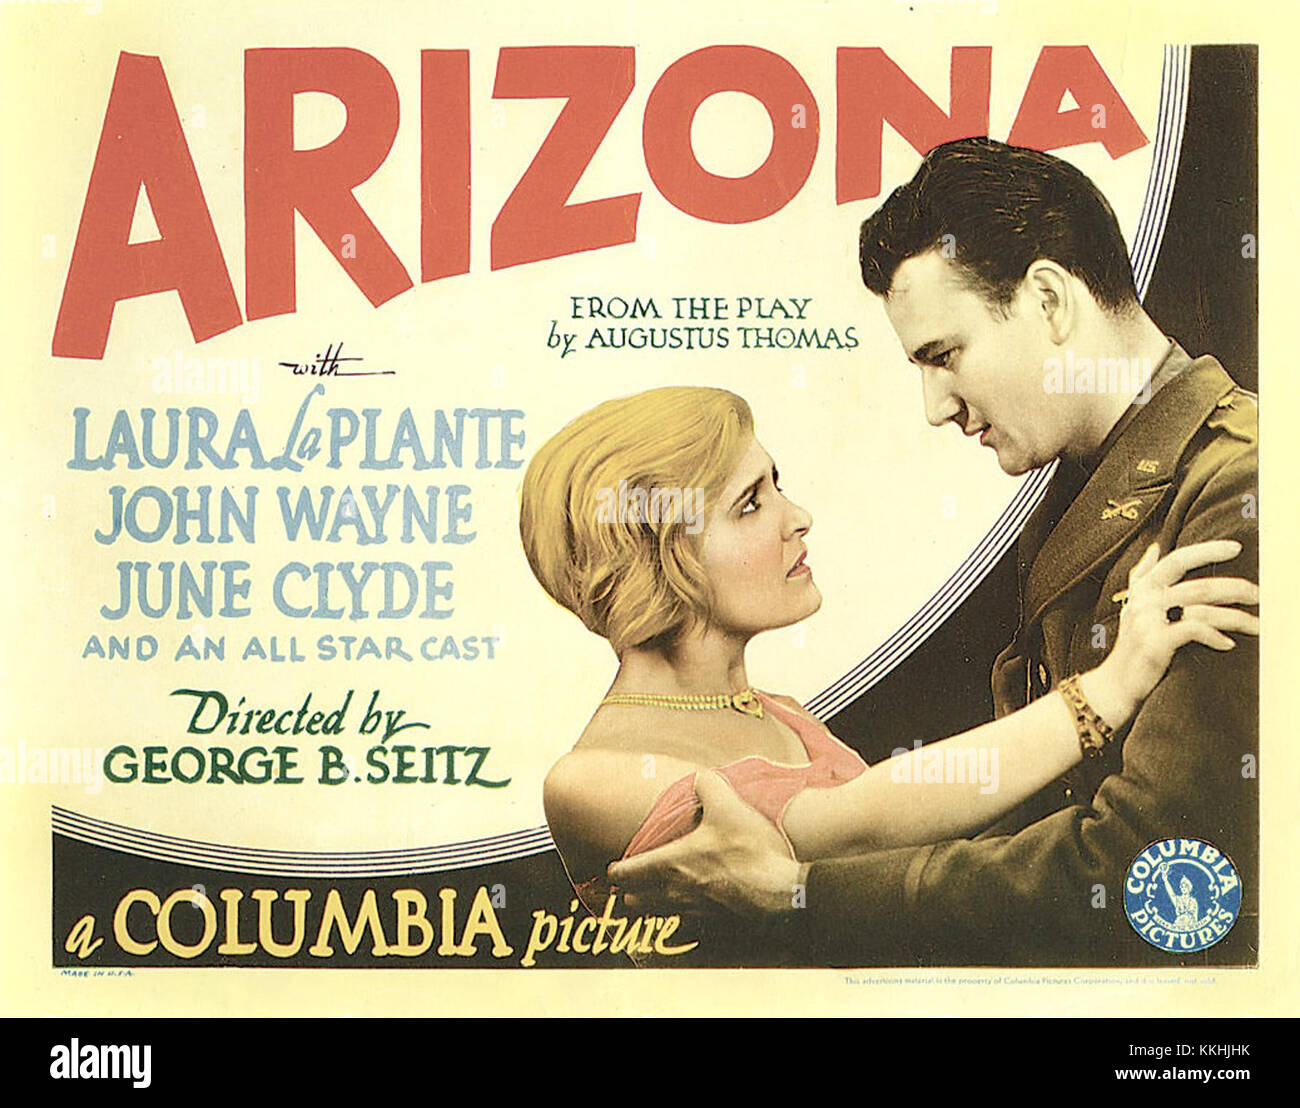 Arizona-lobbycard-1931 Stock Photo